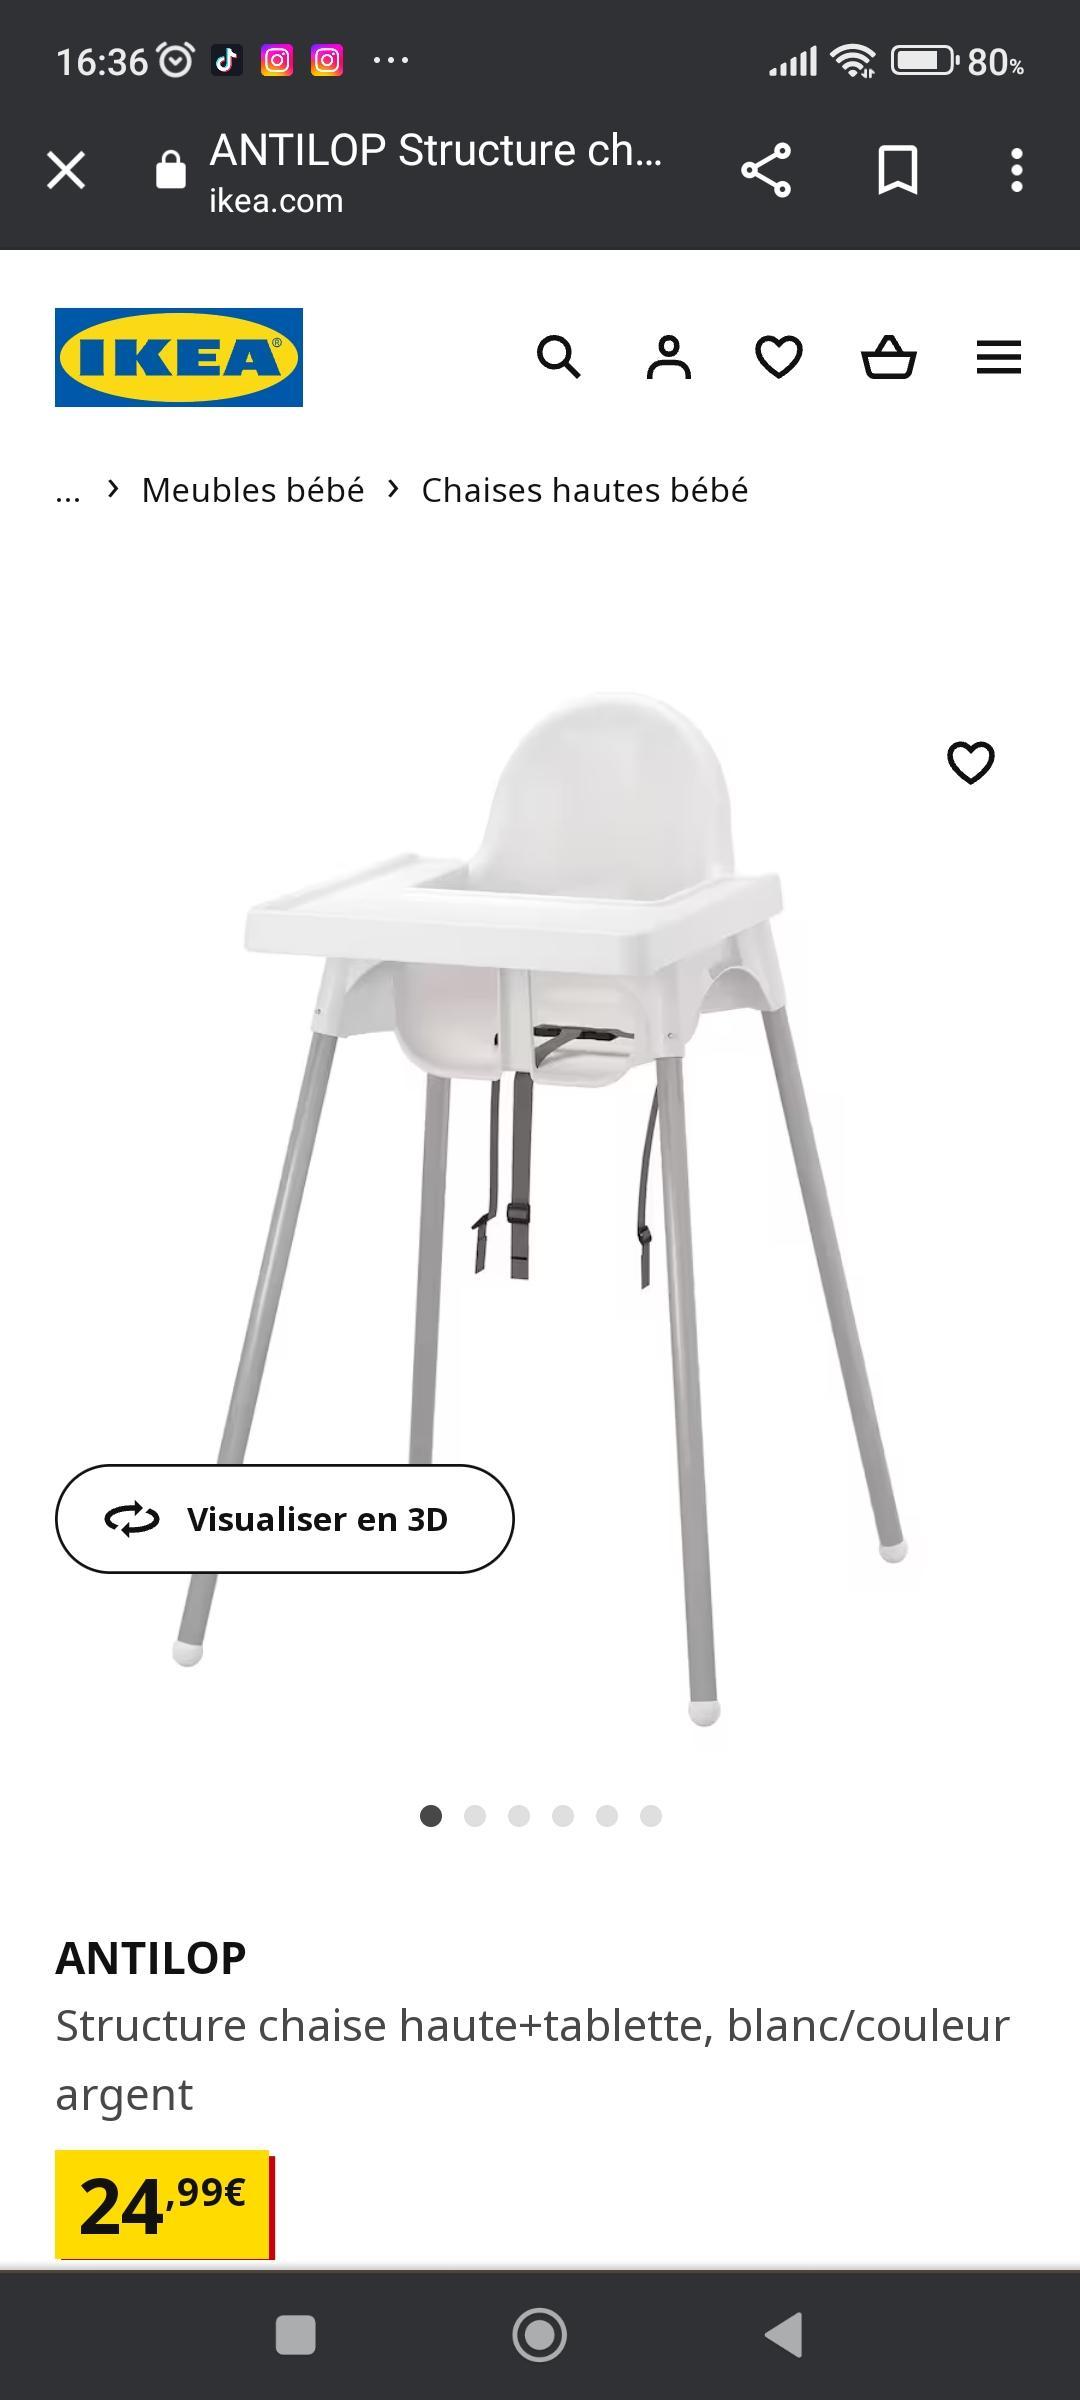 ANTILOP Structure chaise haute+tablette, blanc/couleur argent - IKEA